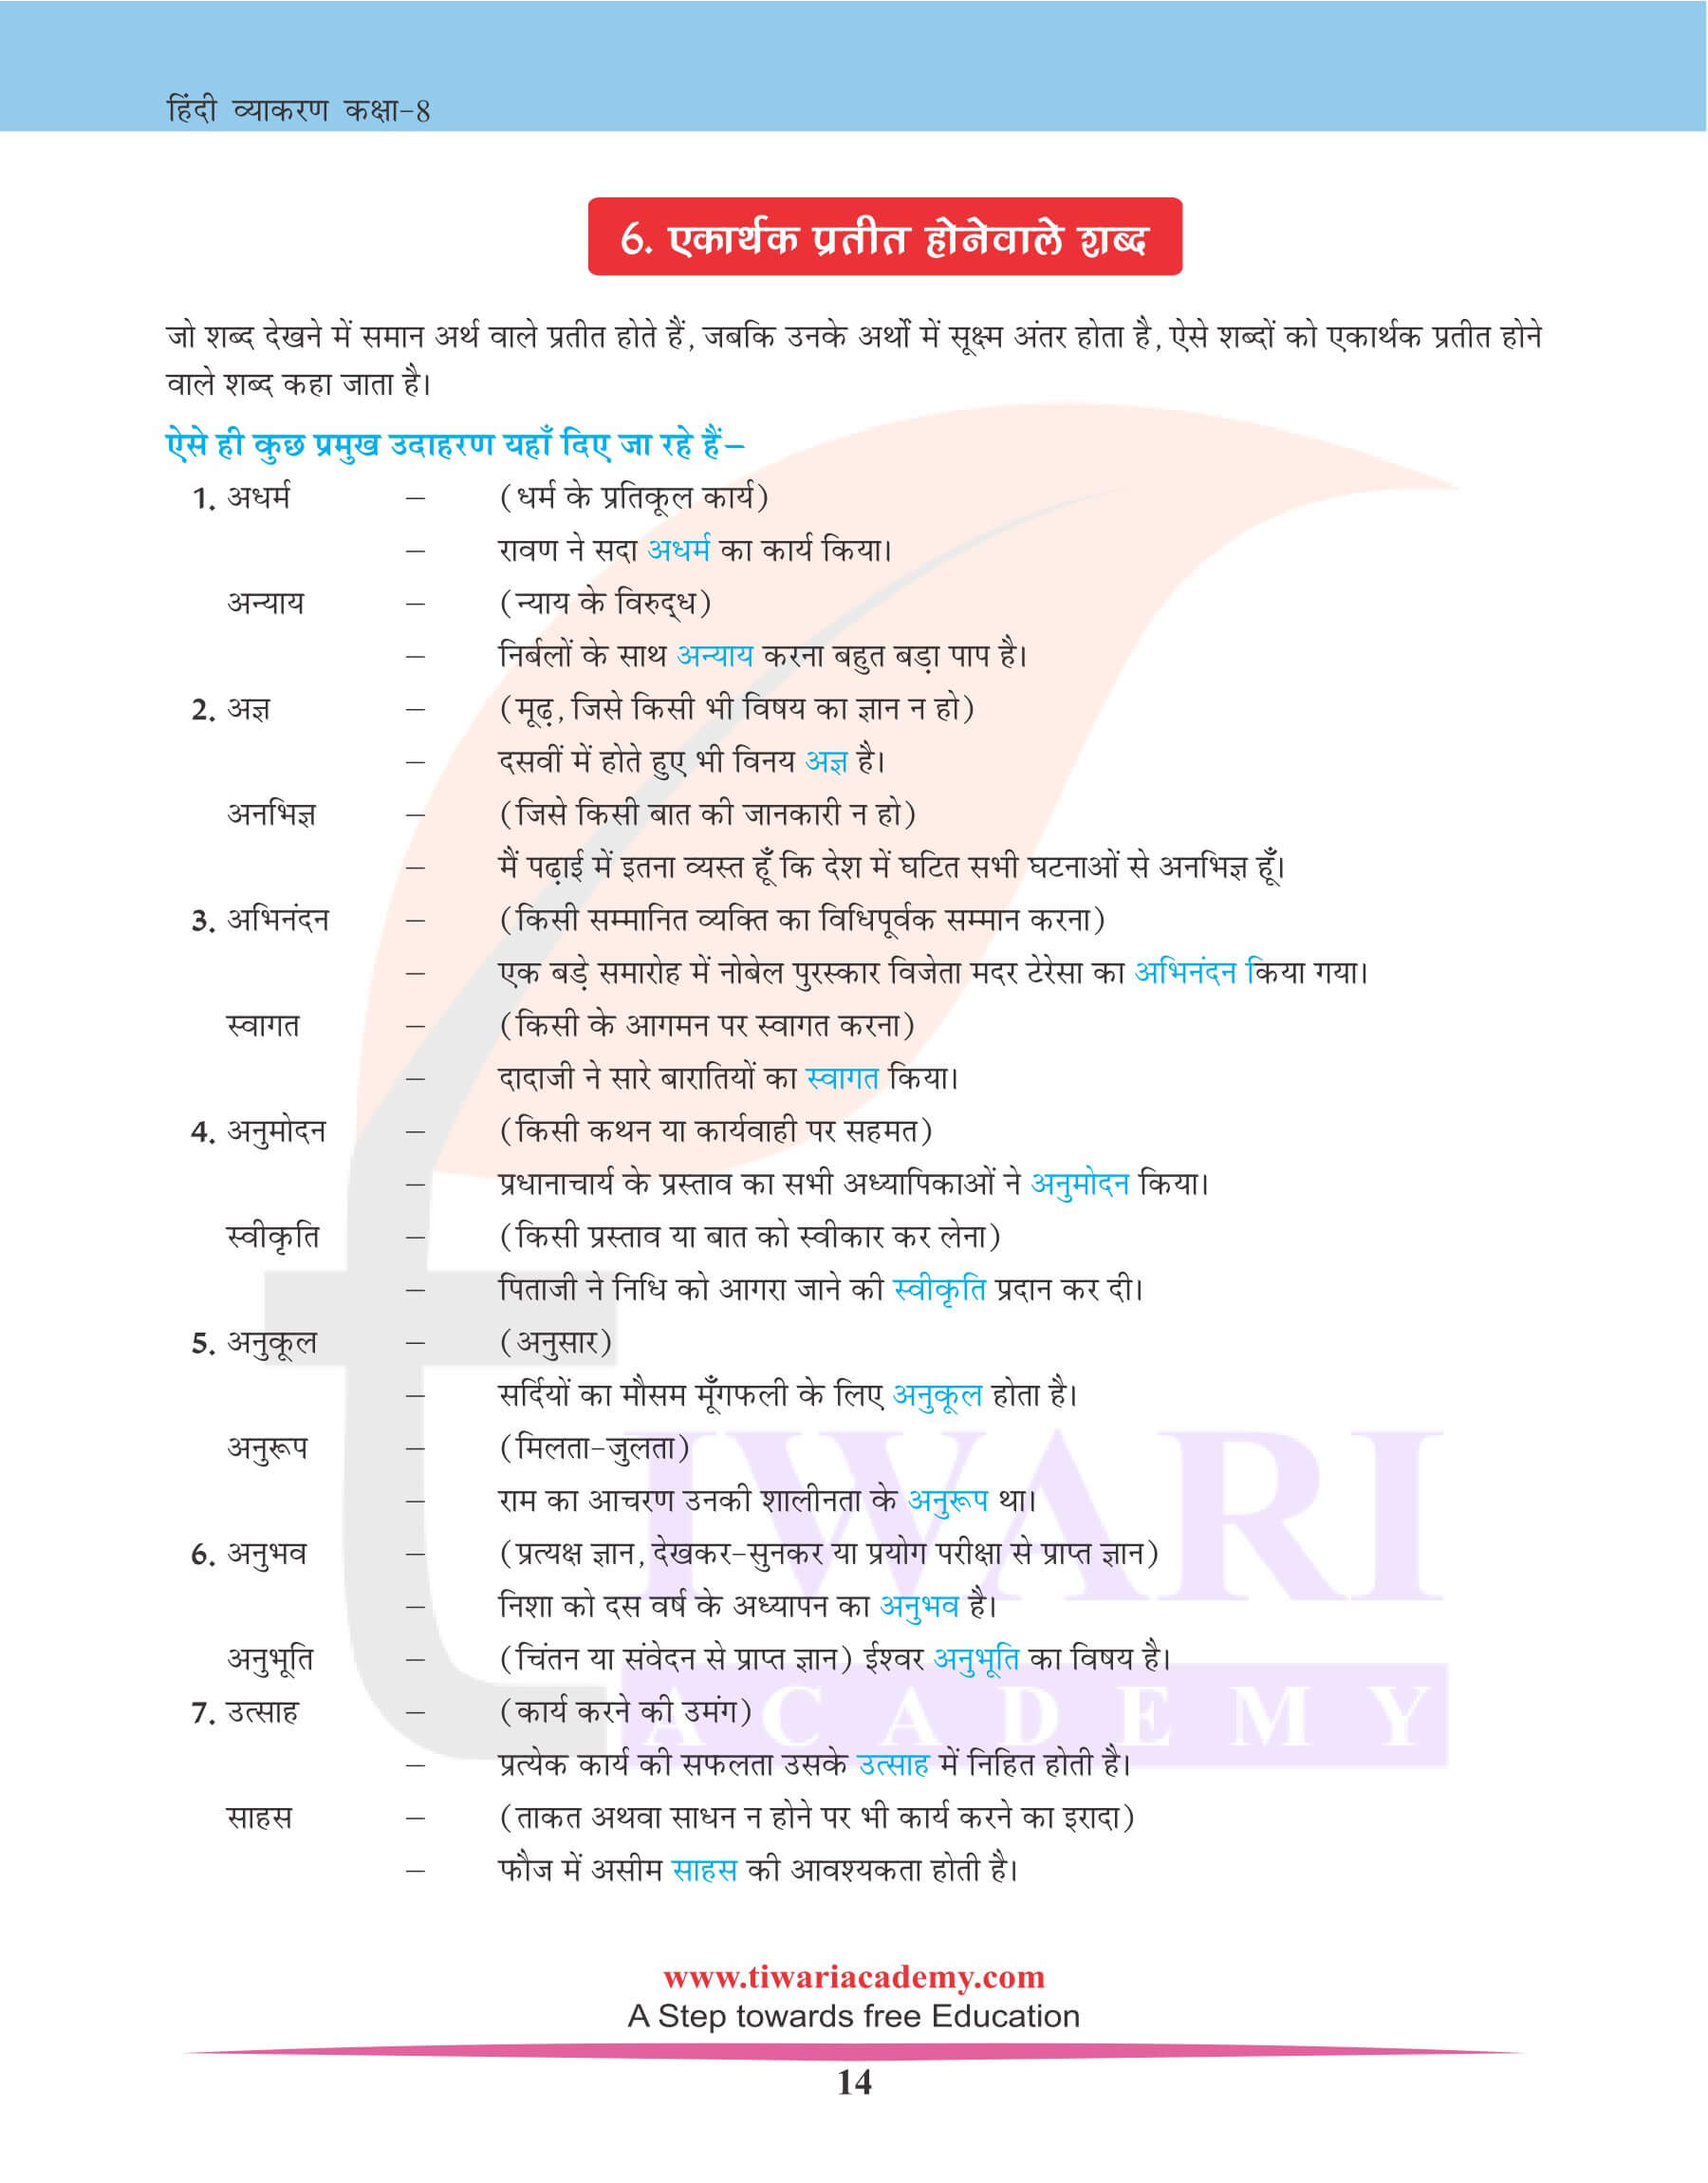 कक्षा 8 हिंदी व्याकरण में भिन्नार्थक शब्द परिचय